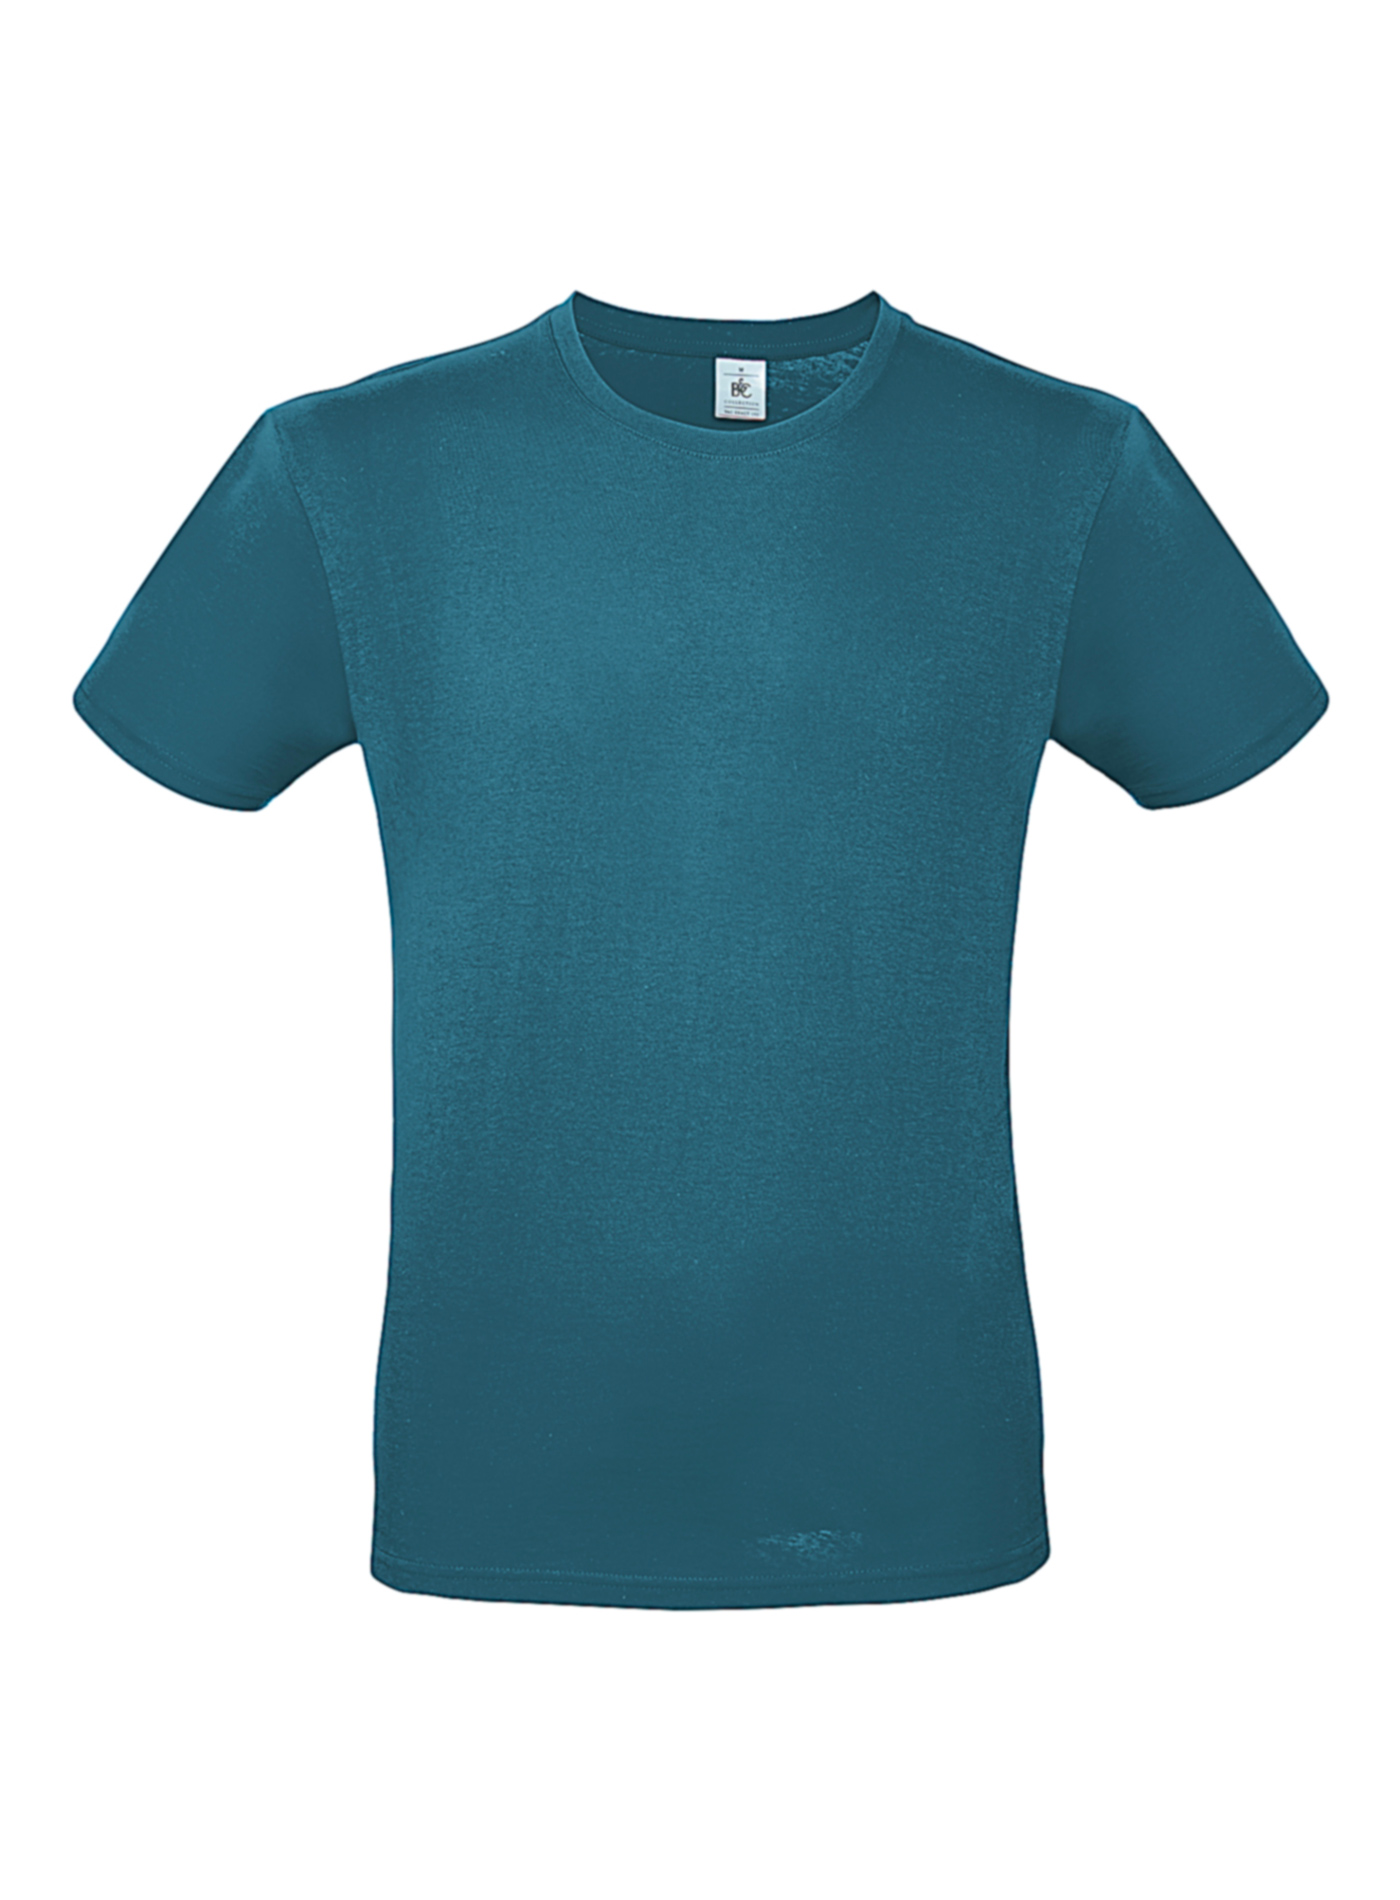 Pánské tričko B&C - Modrozelená XL